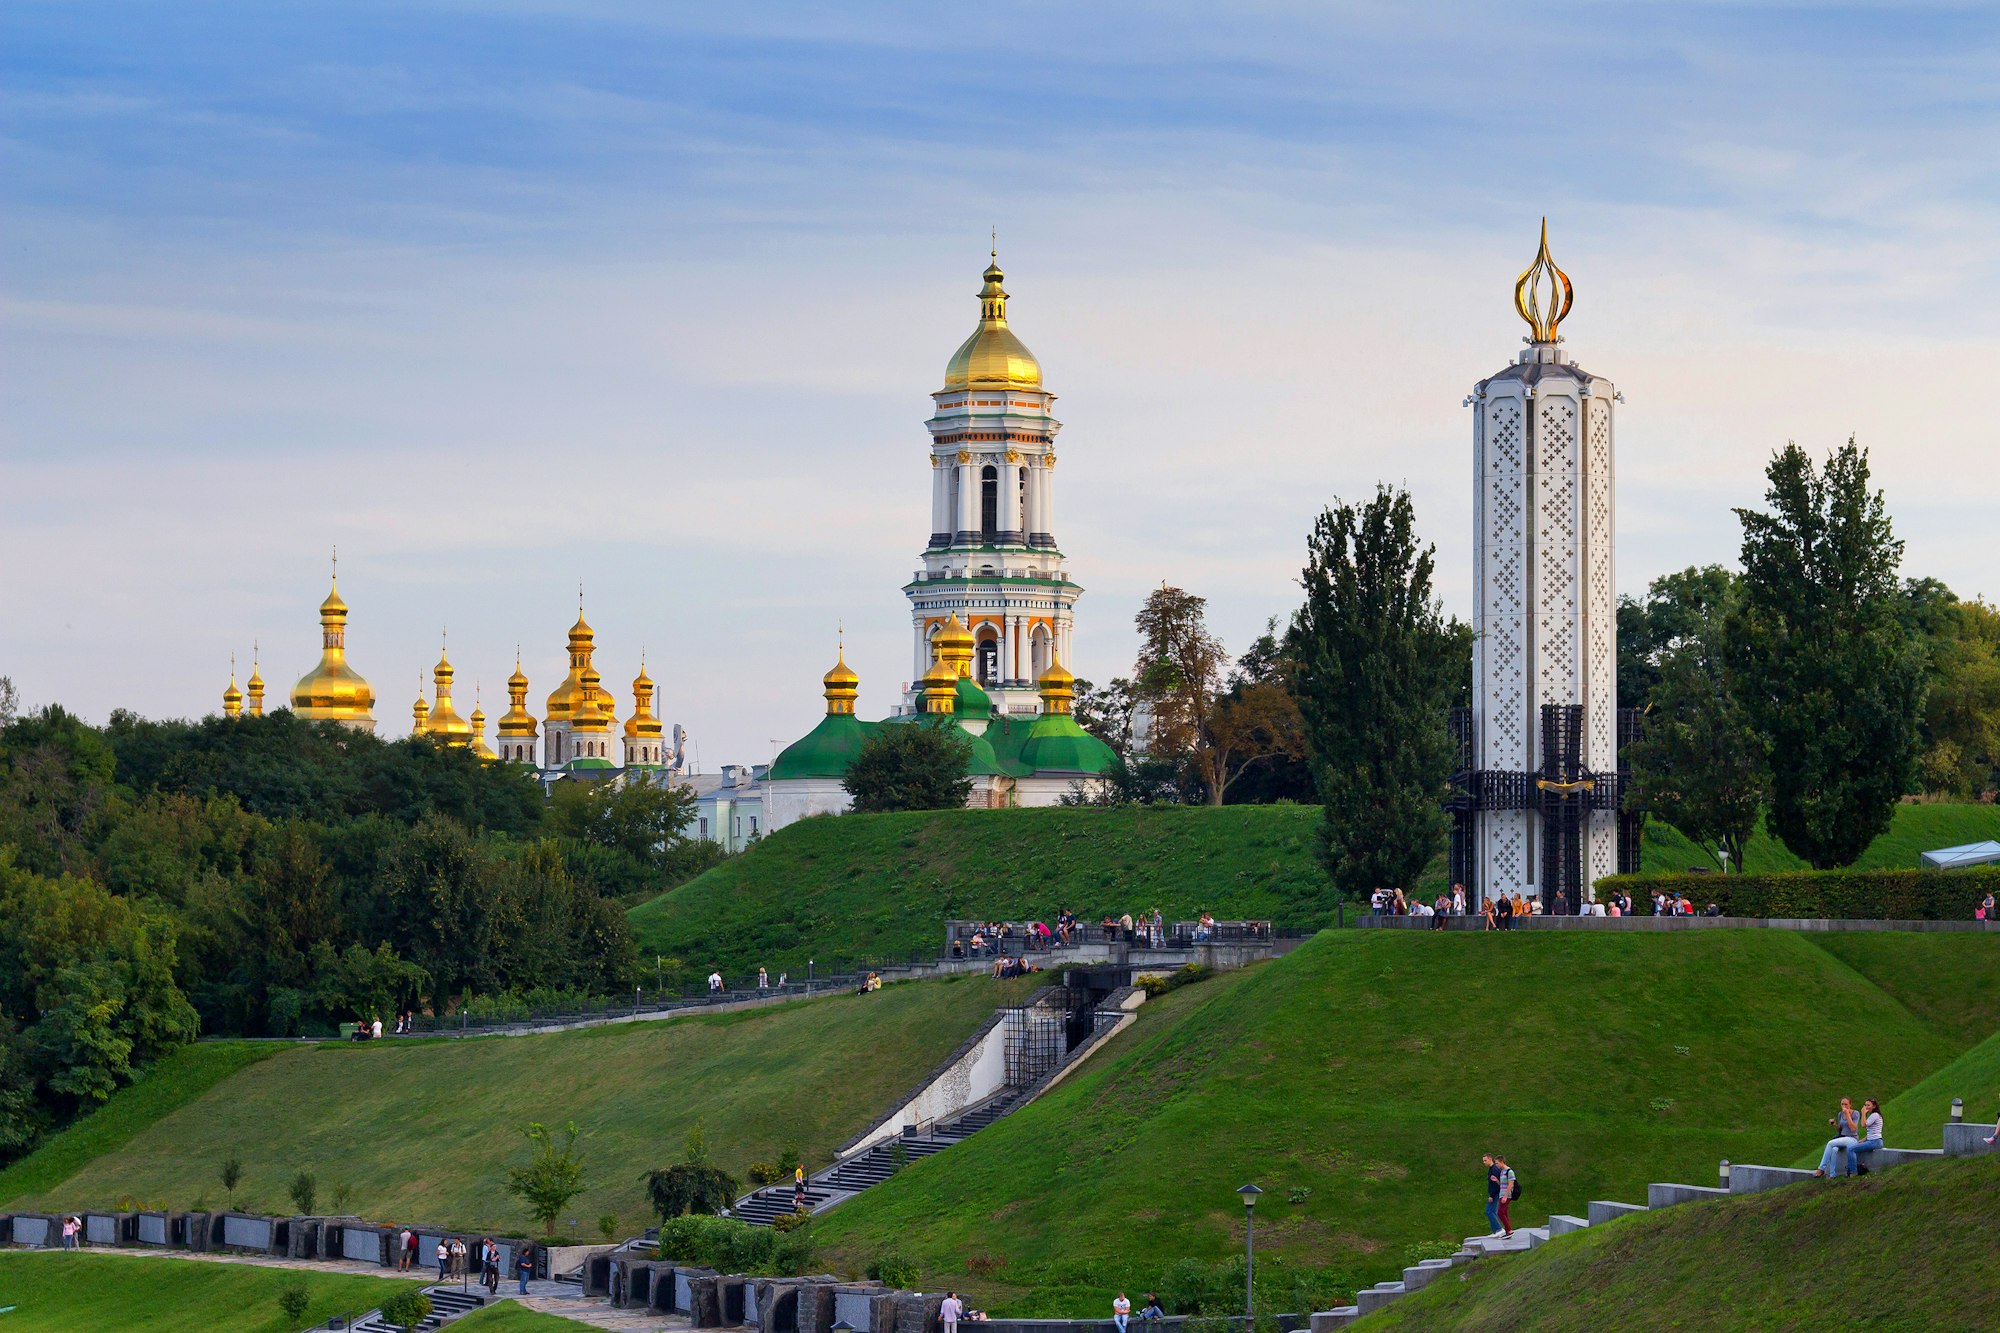 Imagen del monumento real situado en Ucrania.